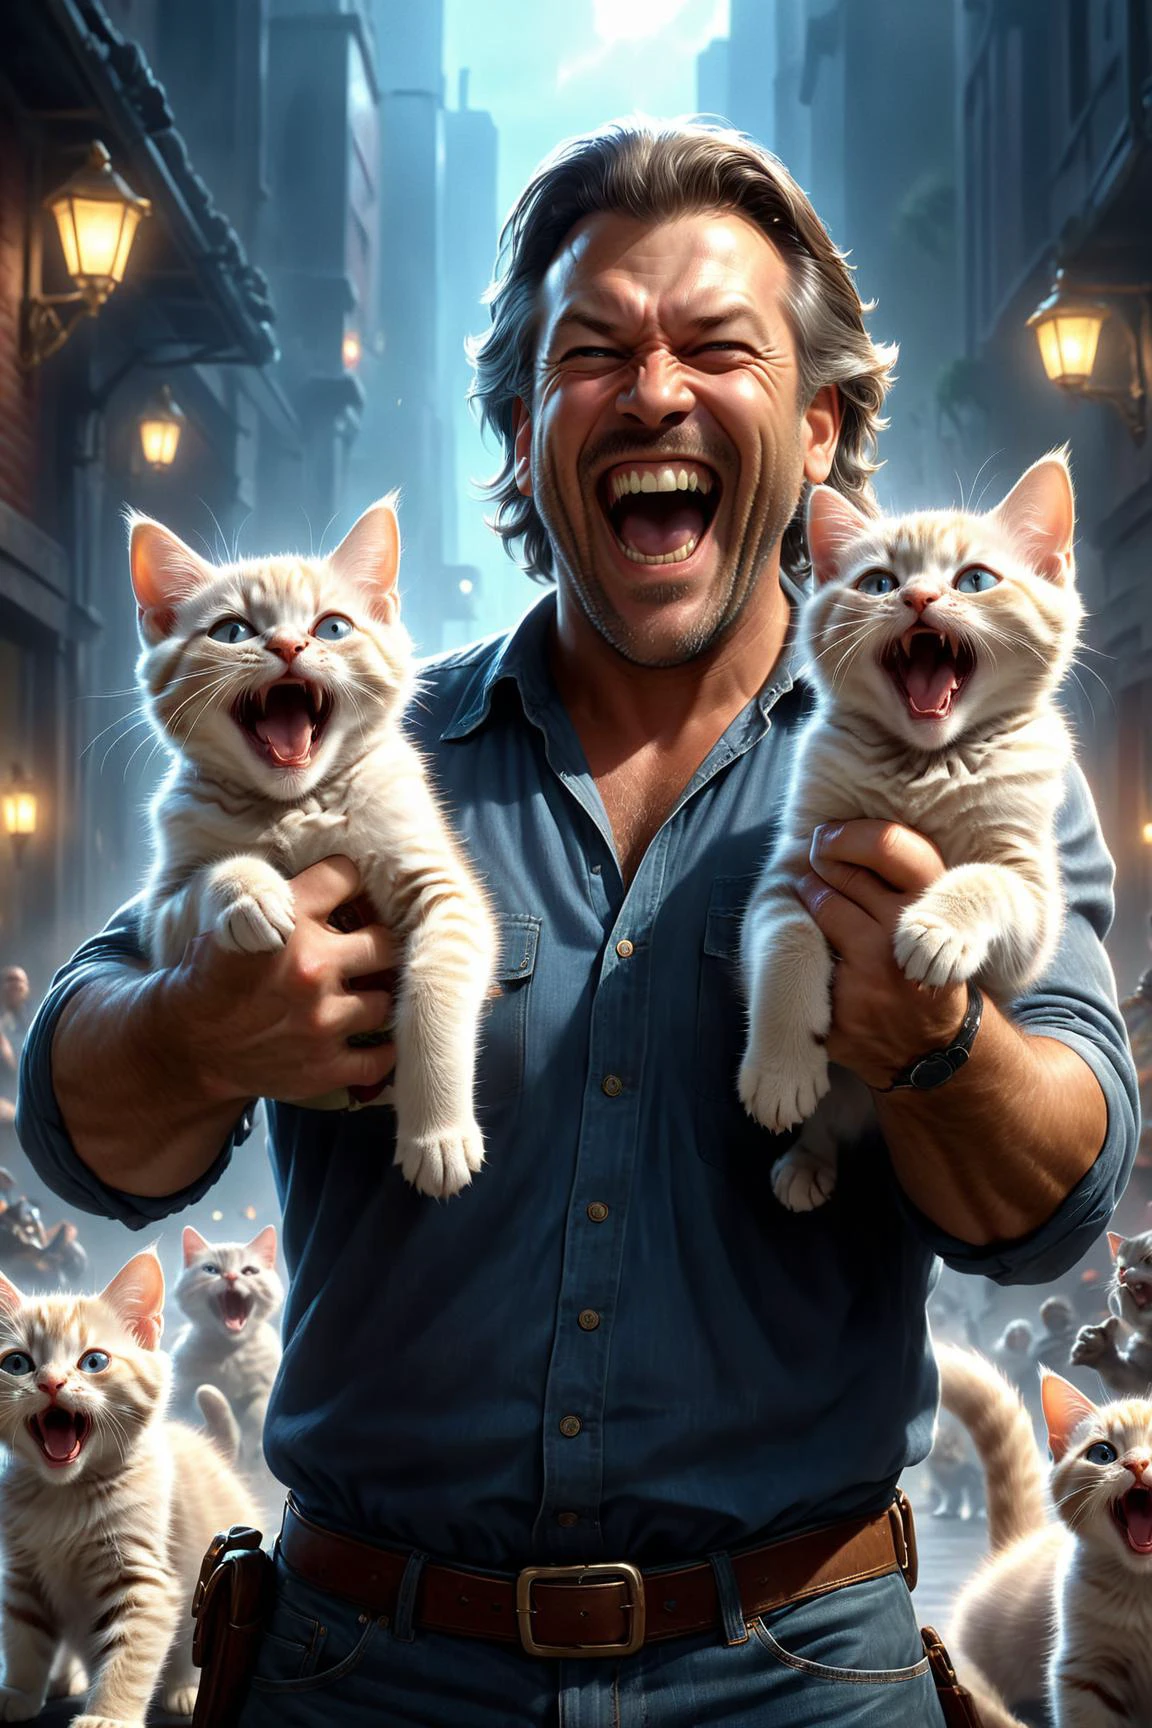 صورة سينمائية واقعية بدقة 8K ((( آرون دوغلاس ) وتيد ناسميث ) وستيفن جاميل ) وروبرت موران ,  رجل يحمل قطتين صغيرتين لطيفتين بينما يضحك بجنون, القطط ذات الاستخدام المزدوج 